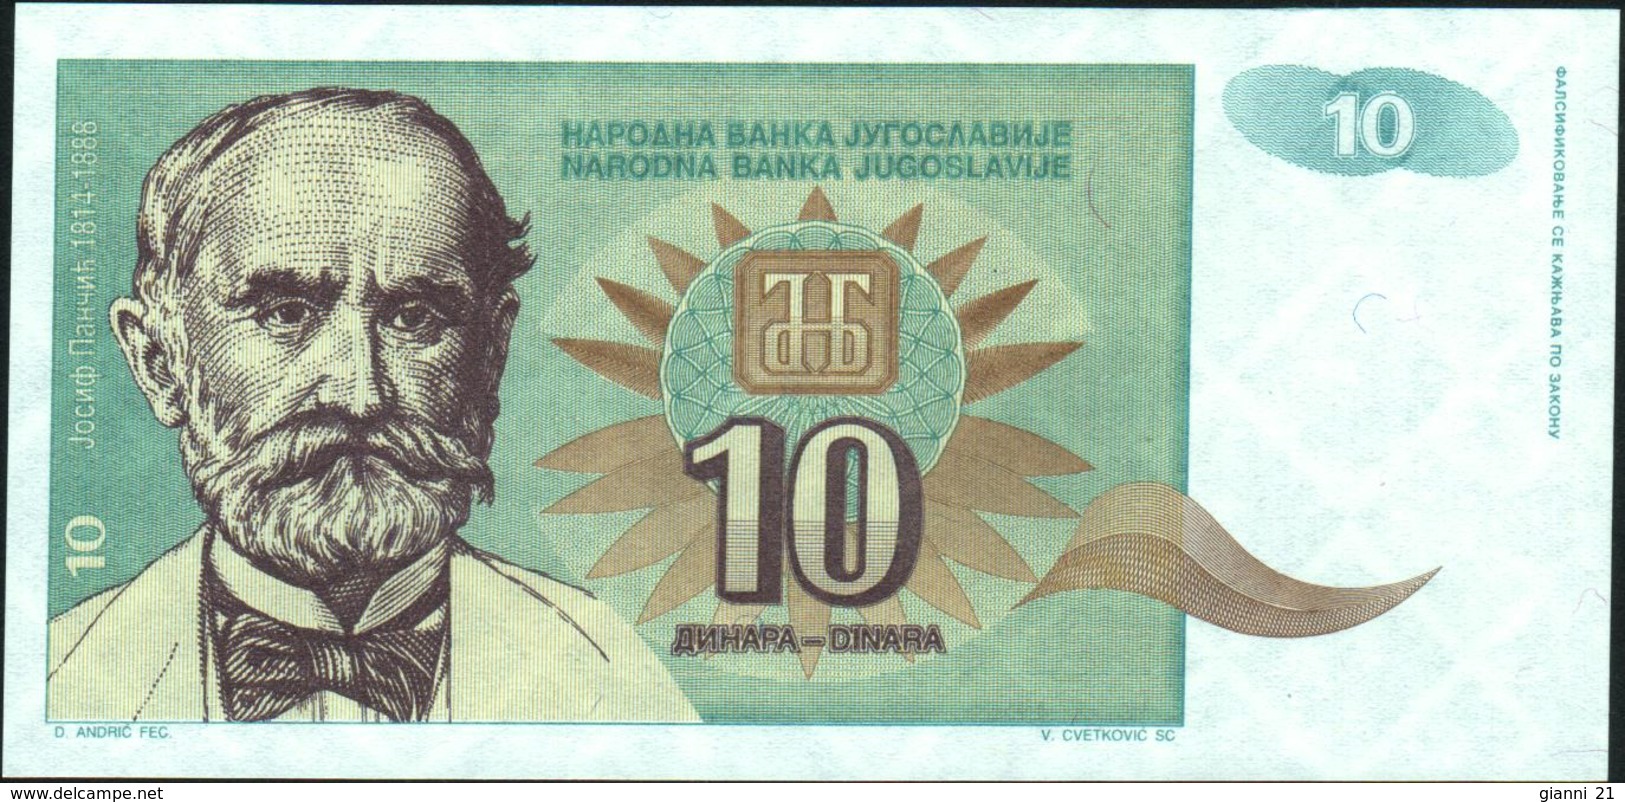 YUGOSLAVIA - 10 Dinara 1994 {Narodna Banka Jugoslavije} UNC P.138 - Yugoslavia